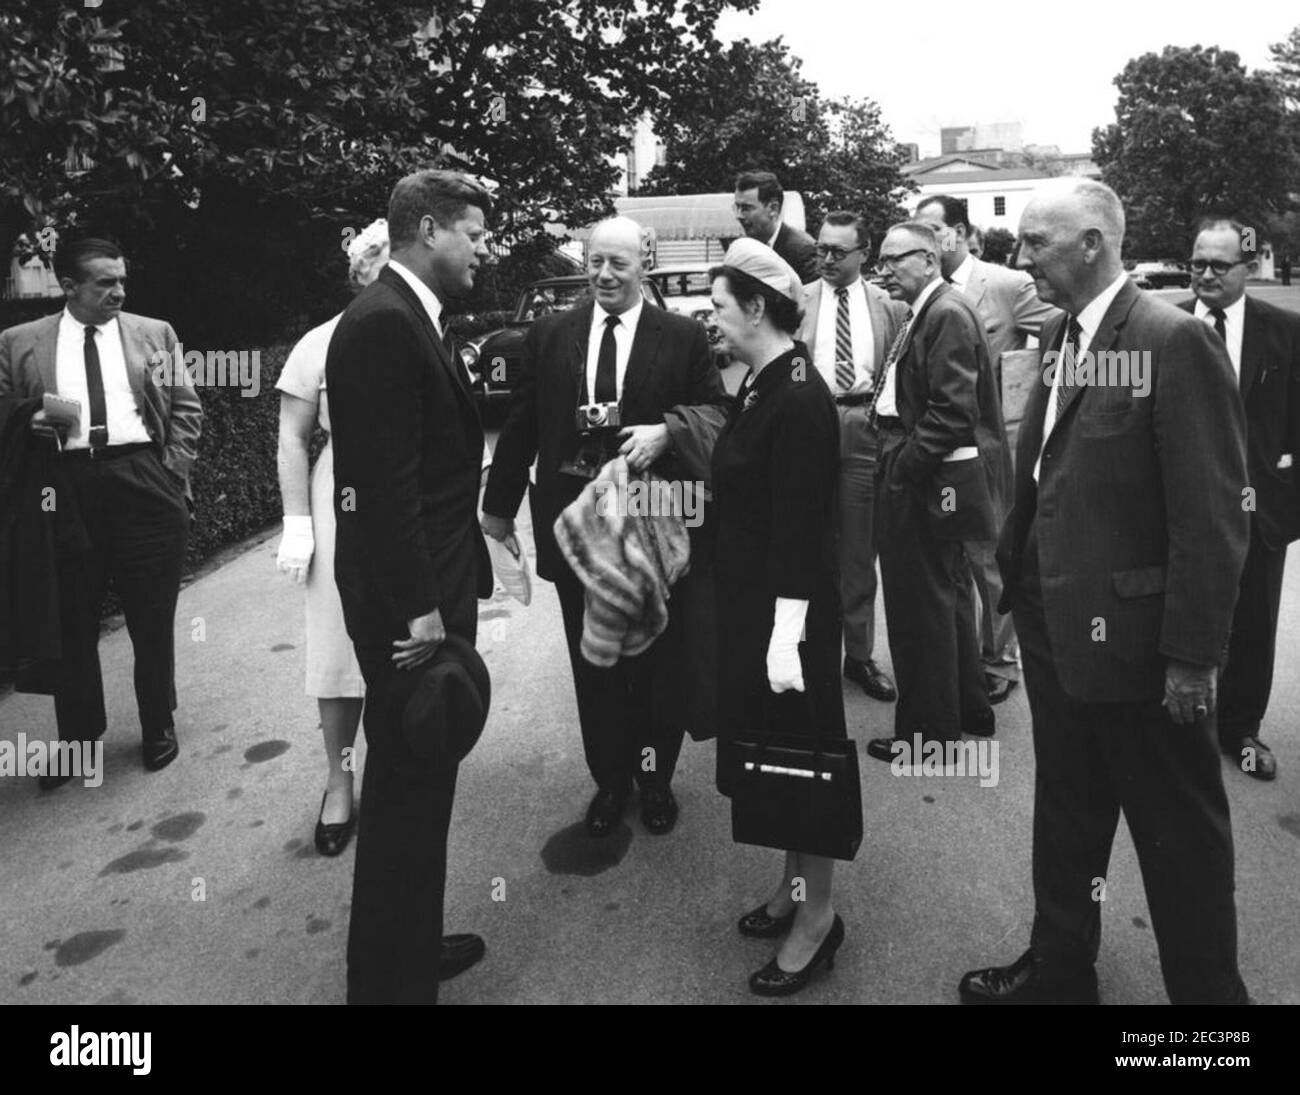 Retour du président Kennedy d'Atlantic City, 12:34. Le président John F.  Kennedy (à gauche) visite des membres de la presse et d'autres invités à  son retour d'Atlantic City, New Jersey. Le doyen